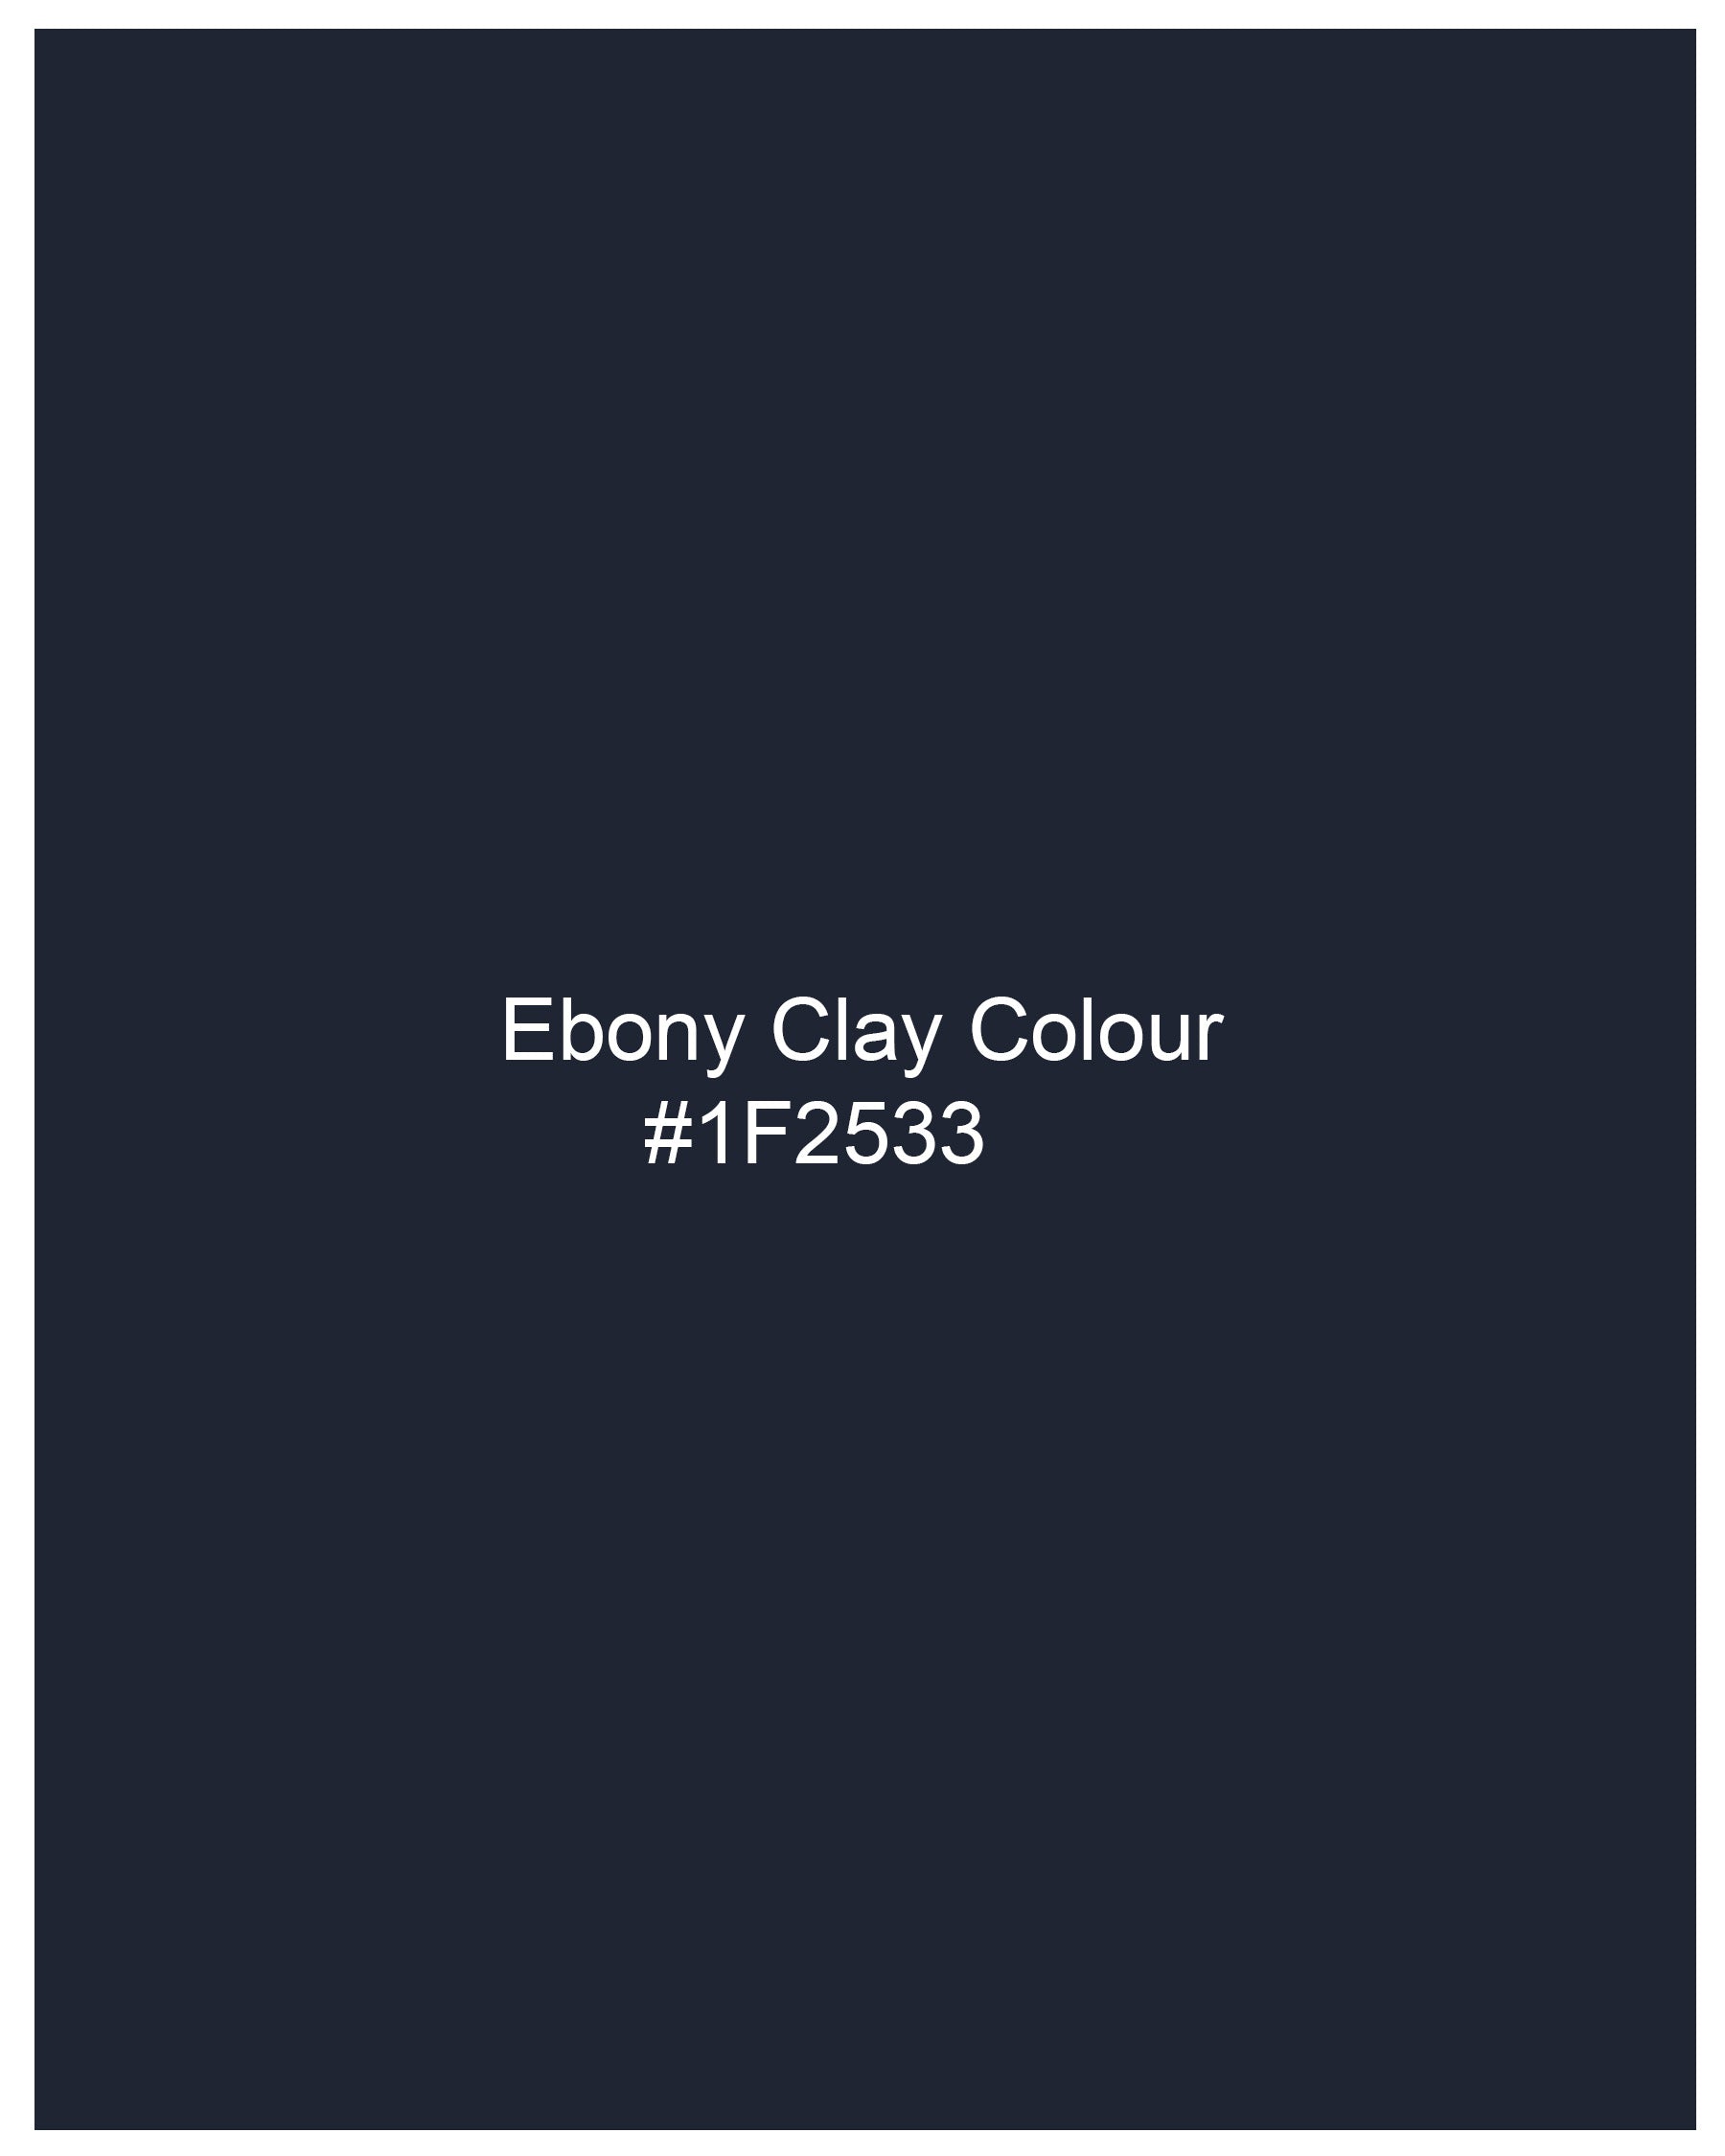 Ebony Clay Navy Blue Dobby Textured Premium Giza Cotton Kurta Shirt 8156-KS-38, 8156-KS-H-38, 8156-KS-39, 8156-KS-H-39, 8156-KS-40, 8156-KS-H-40, 8156-KS-42, 8156-KS-H-42, 8156-KS-44, 8156-KS-H-44, 8156-KS-46, 8156-KS-H-46, 8156-KS-48, 8156-KS-H-48, 8156-KS-50, 8156-KS-H-50, 8156-KS-52, 8156-KS-H-52